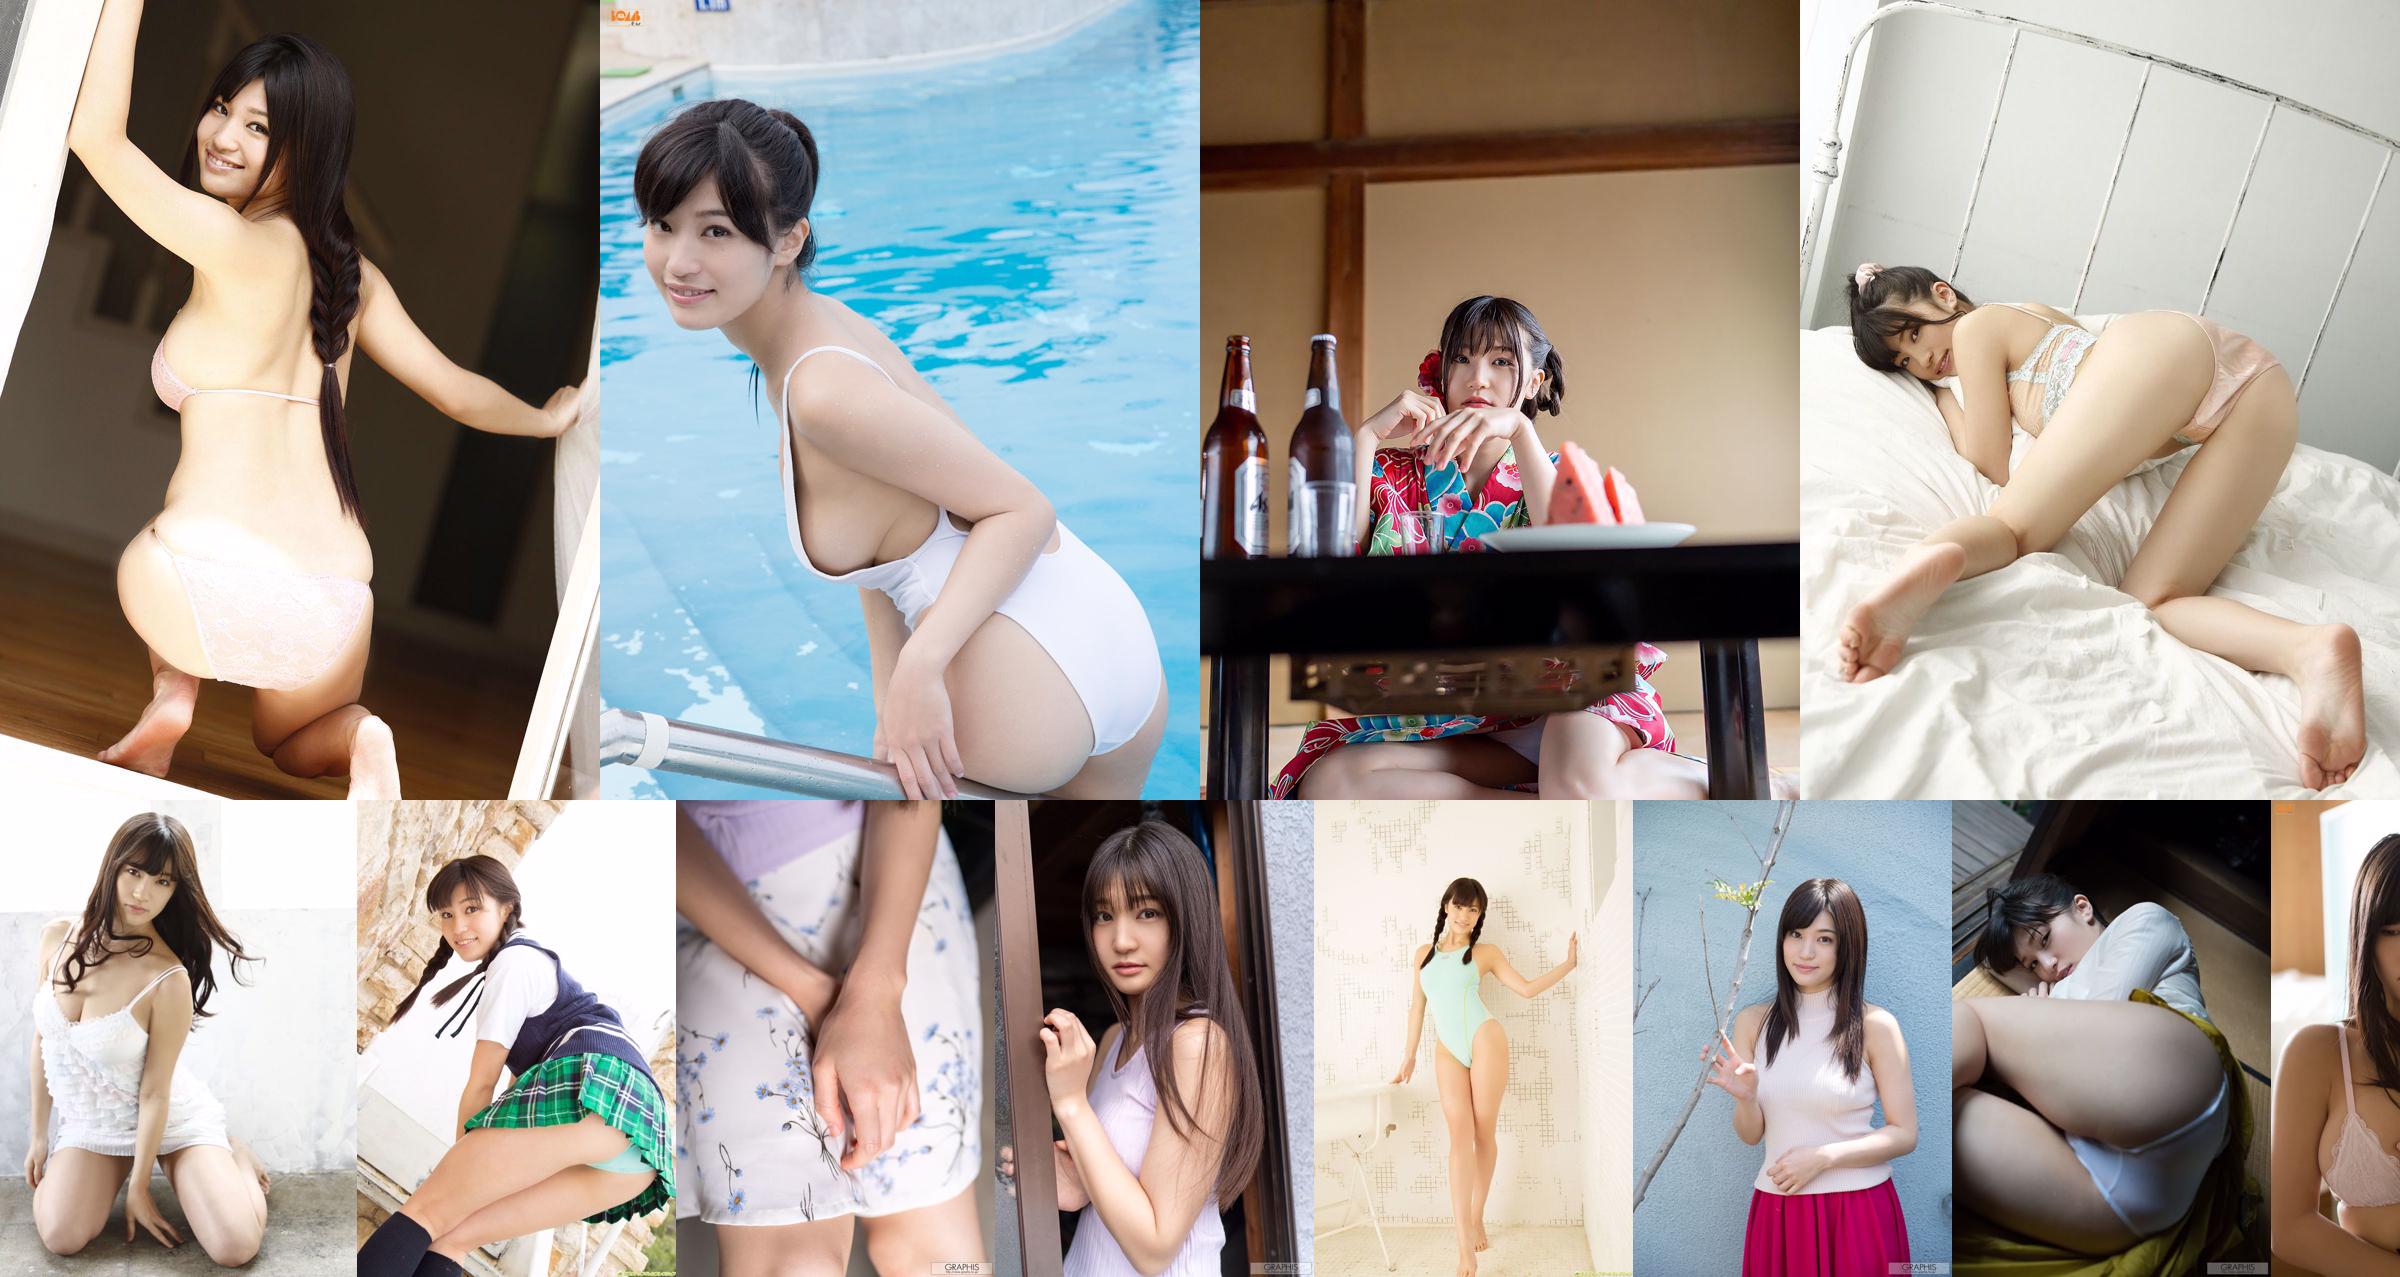 [Bomb.TV] Numero di maggio 2015 Seiko Takasaki Seiko Takasaki / Takahashi Seiko No.6ecfbe Pagina 2